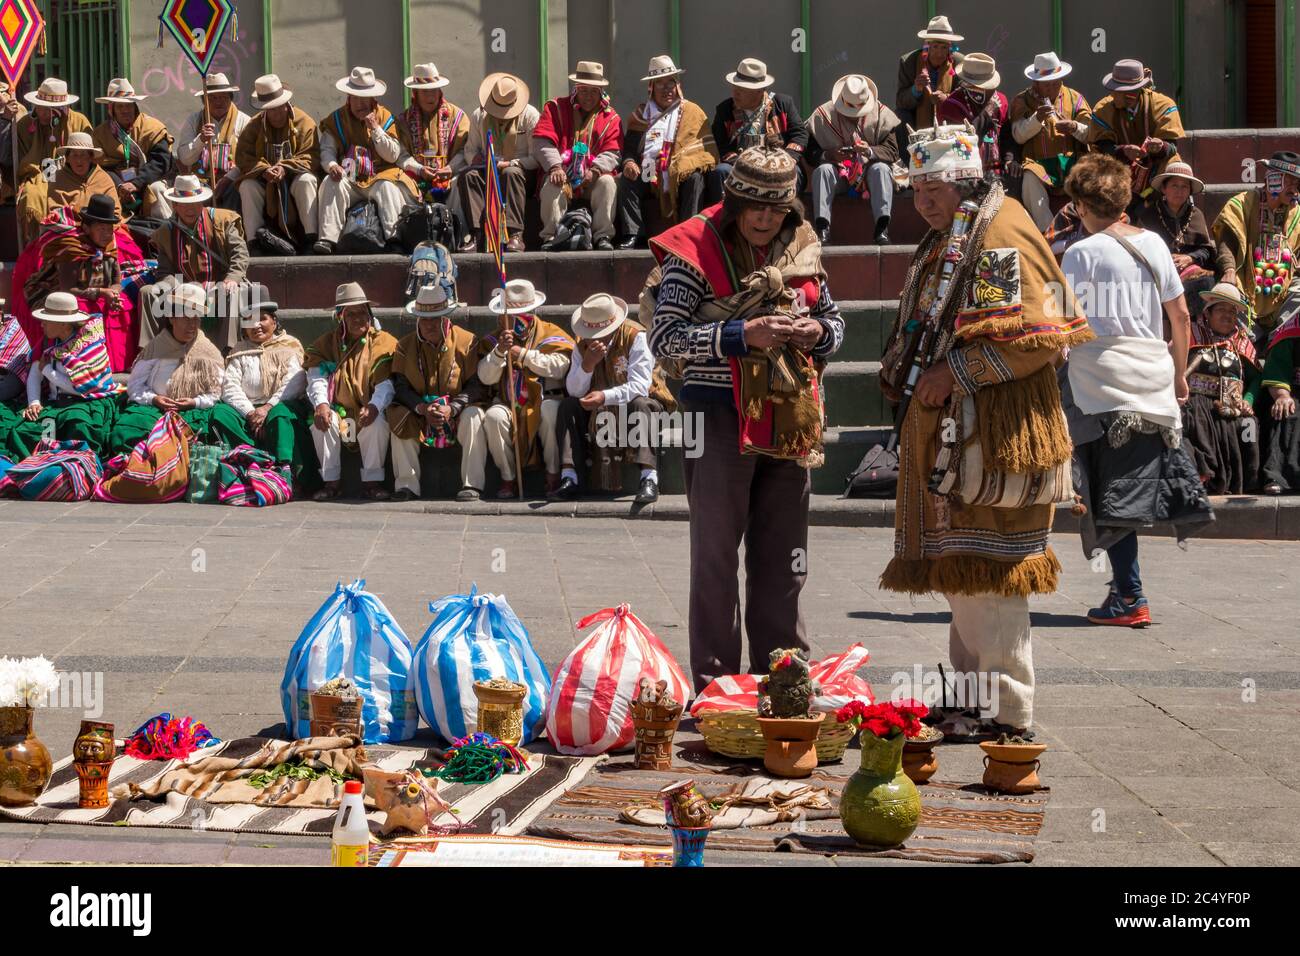 La Paz, Bolivien - 30. september 2018: Der bolivianische Zauberer für traditionelle Medizin tritt auf dem Platz von San Francisco vor einer Menschenmenge in traditionellen Gewand auf Stockfoto